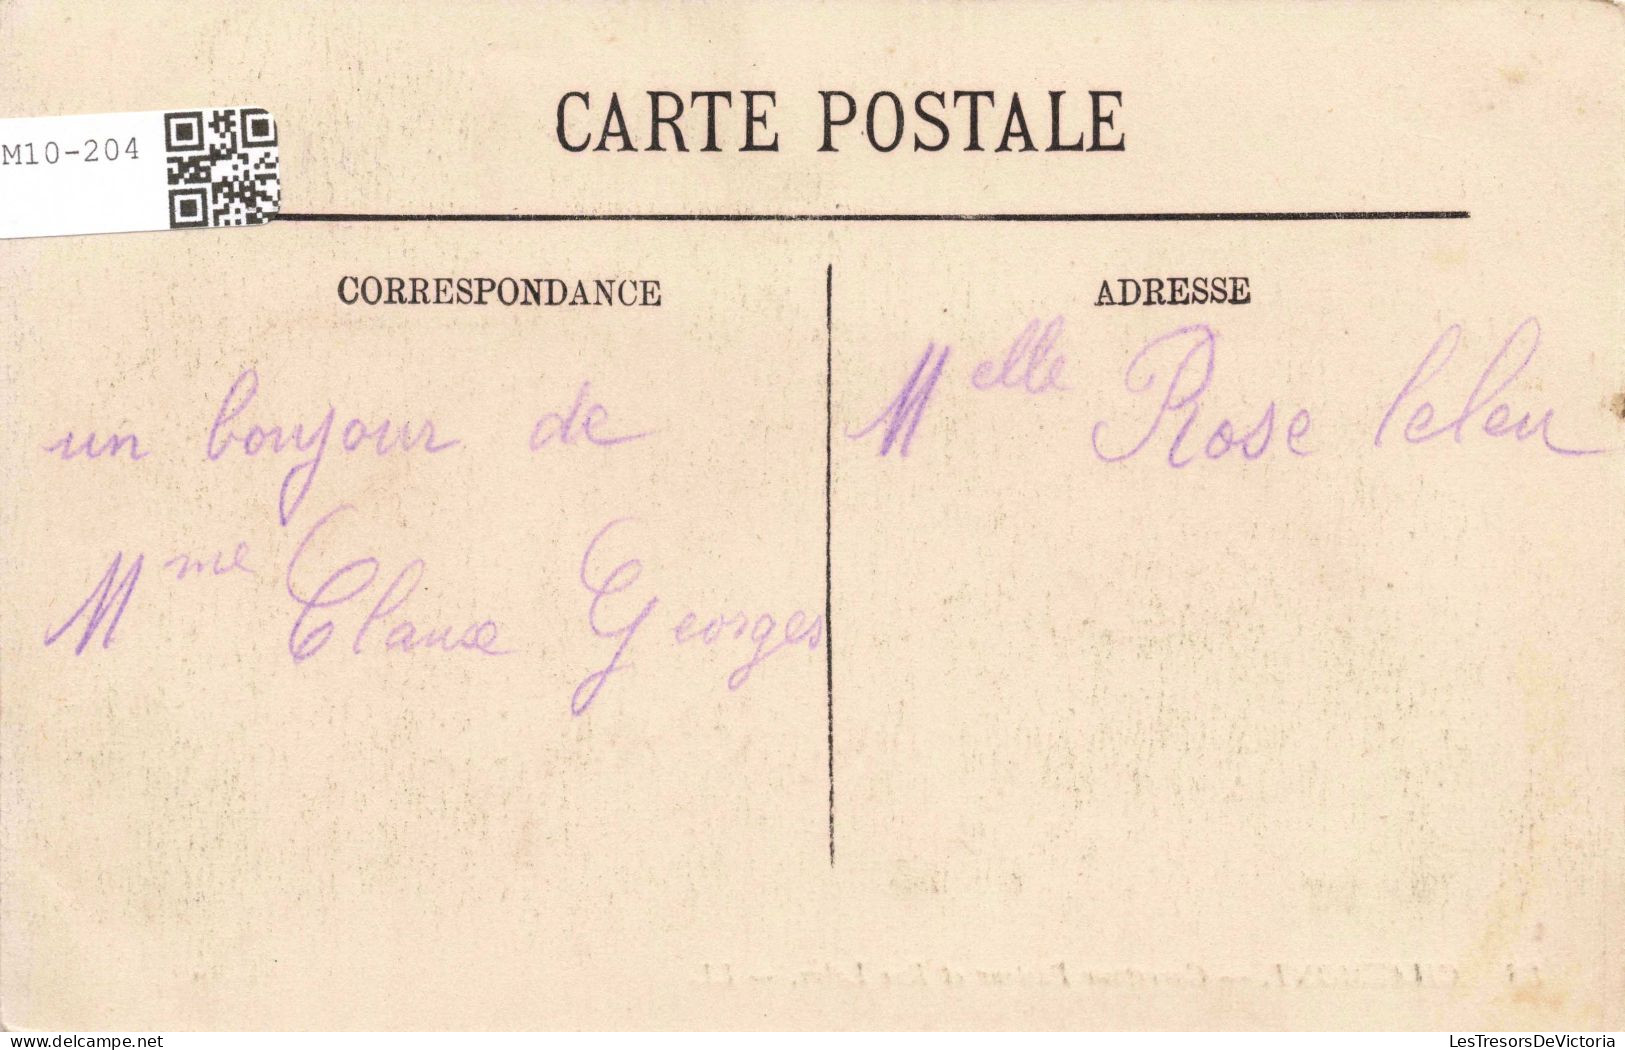 FRANCE - Chaumont - Carrefour Pasteur Et Rue Laloy- LL - Animé - Carte Postale Ancienne - Chaumont